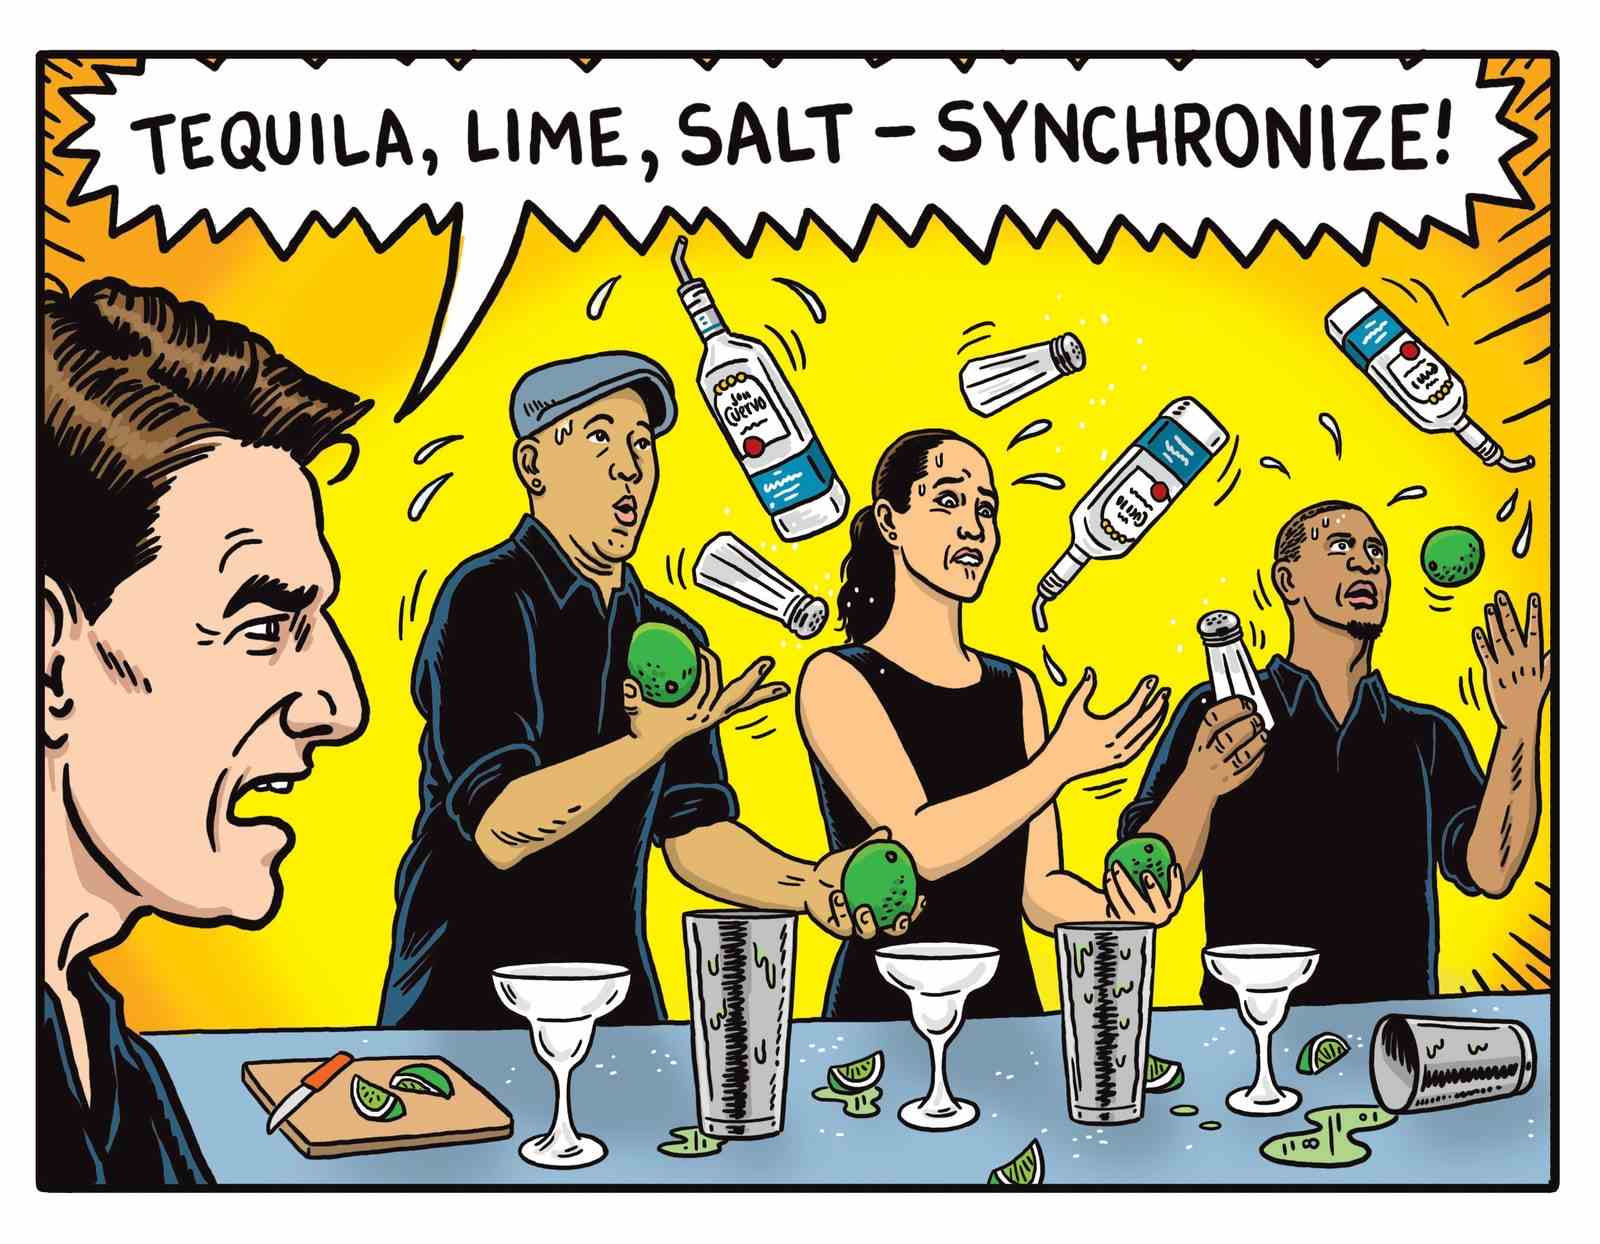 Tom Cruise schreit, während drei Barkeeper mit Tequila-Flaschen jonglieren.